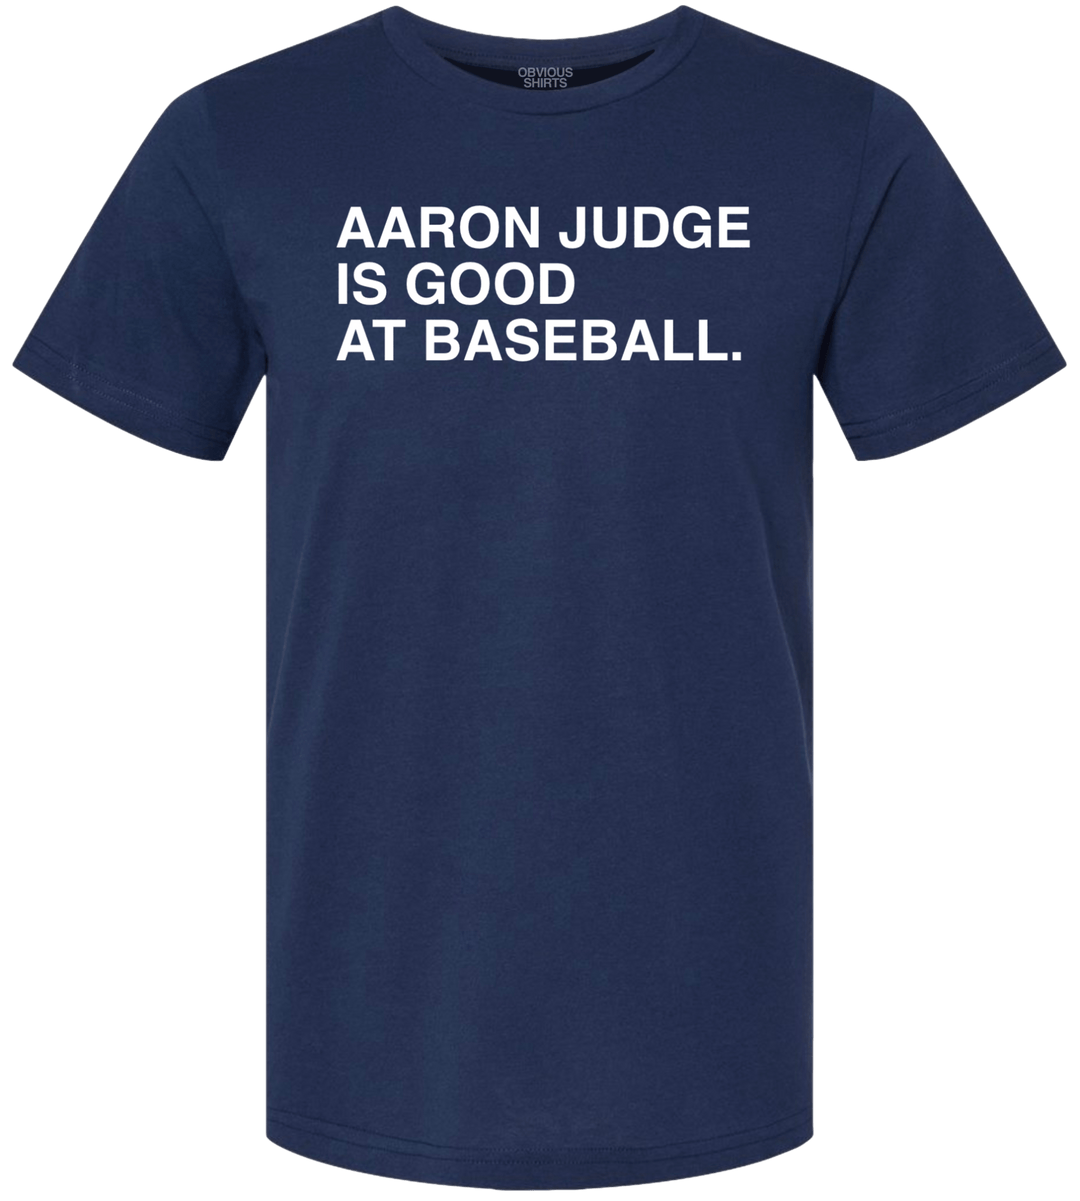 AARON JUDGE IS GOOD AT BASEBALL. - OBVIOUS SHIRTS